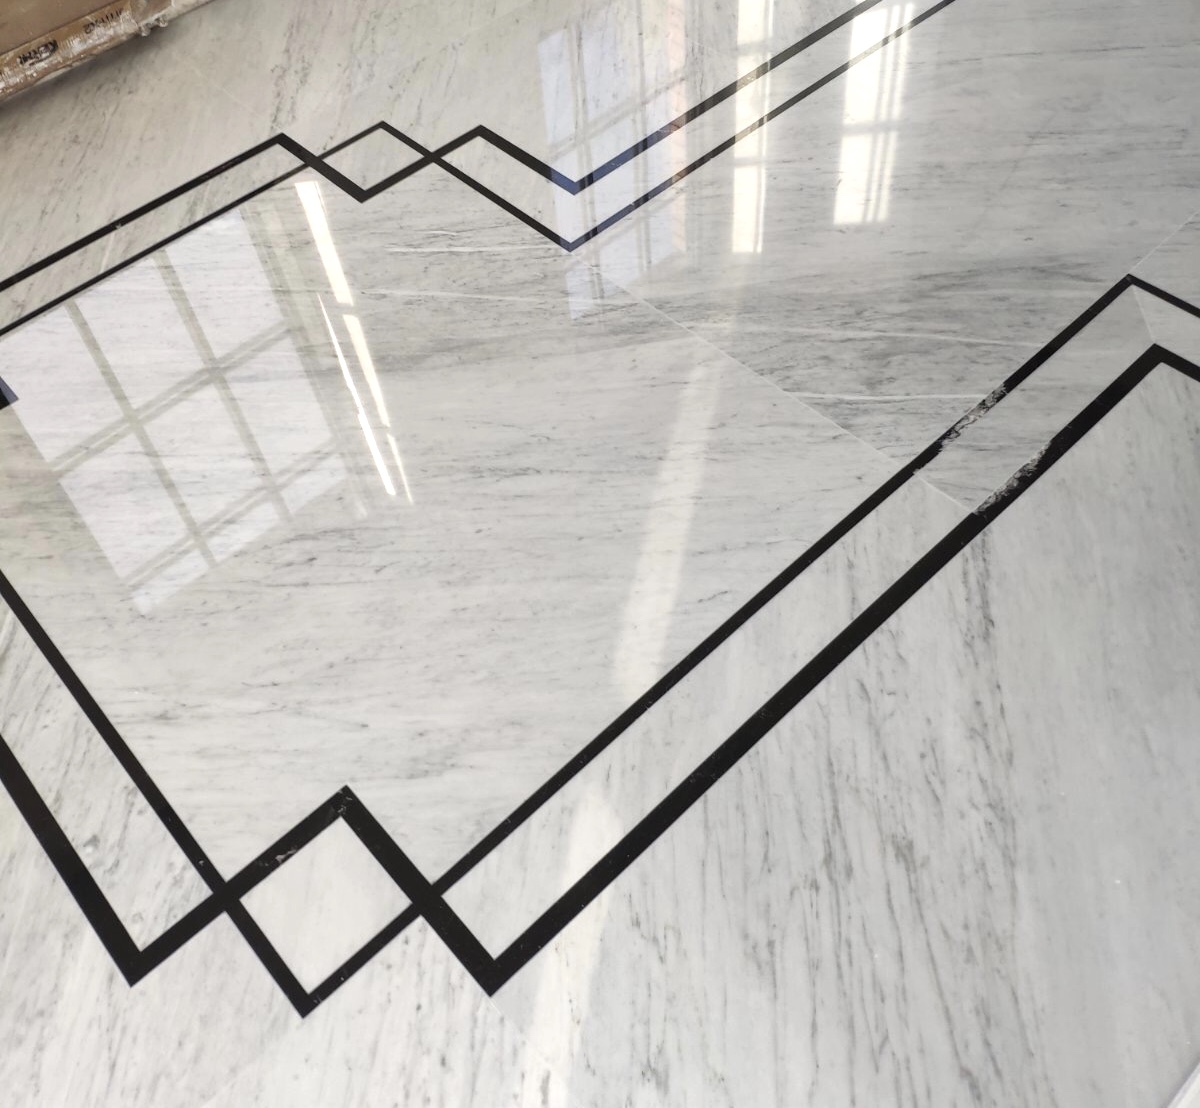 Carrara Marble Floor with Nero Marquina Details - La Fenice Marmi